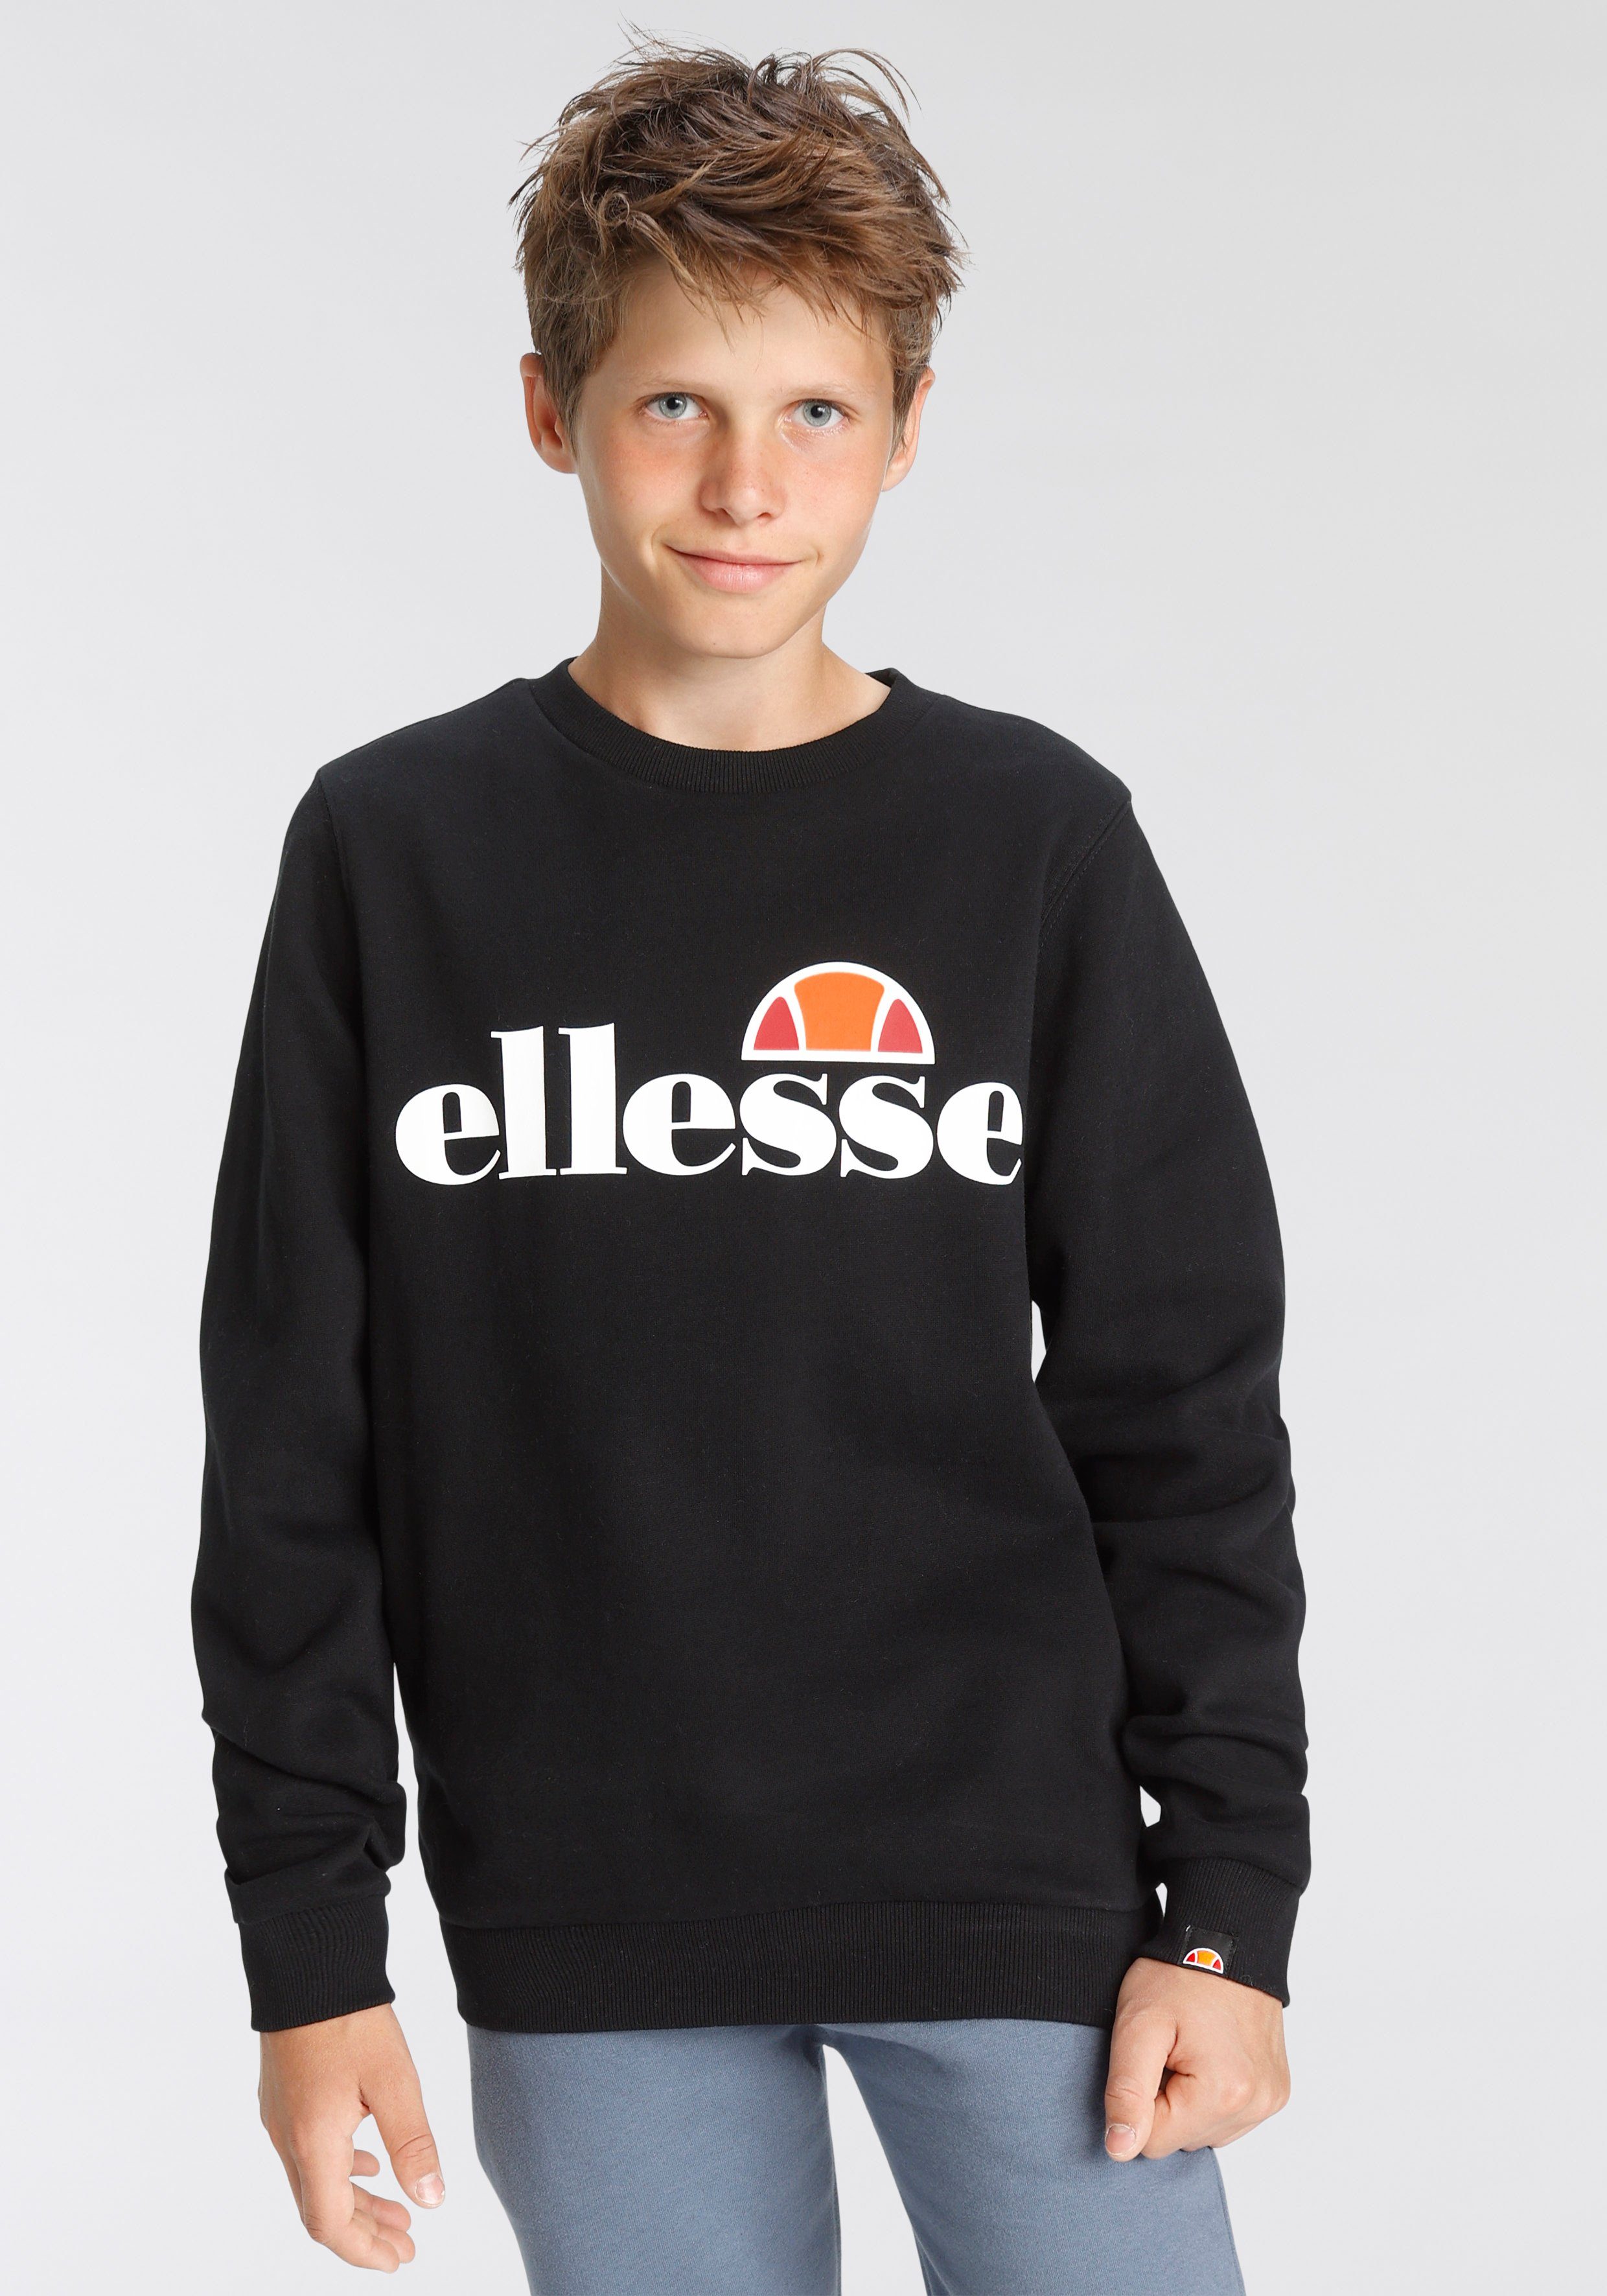 Ellesse Sweatshirt für Kinder black